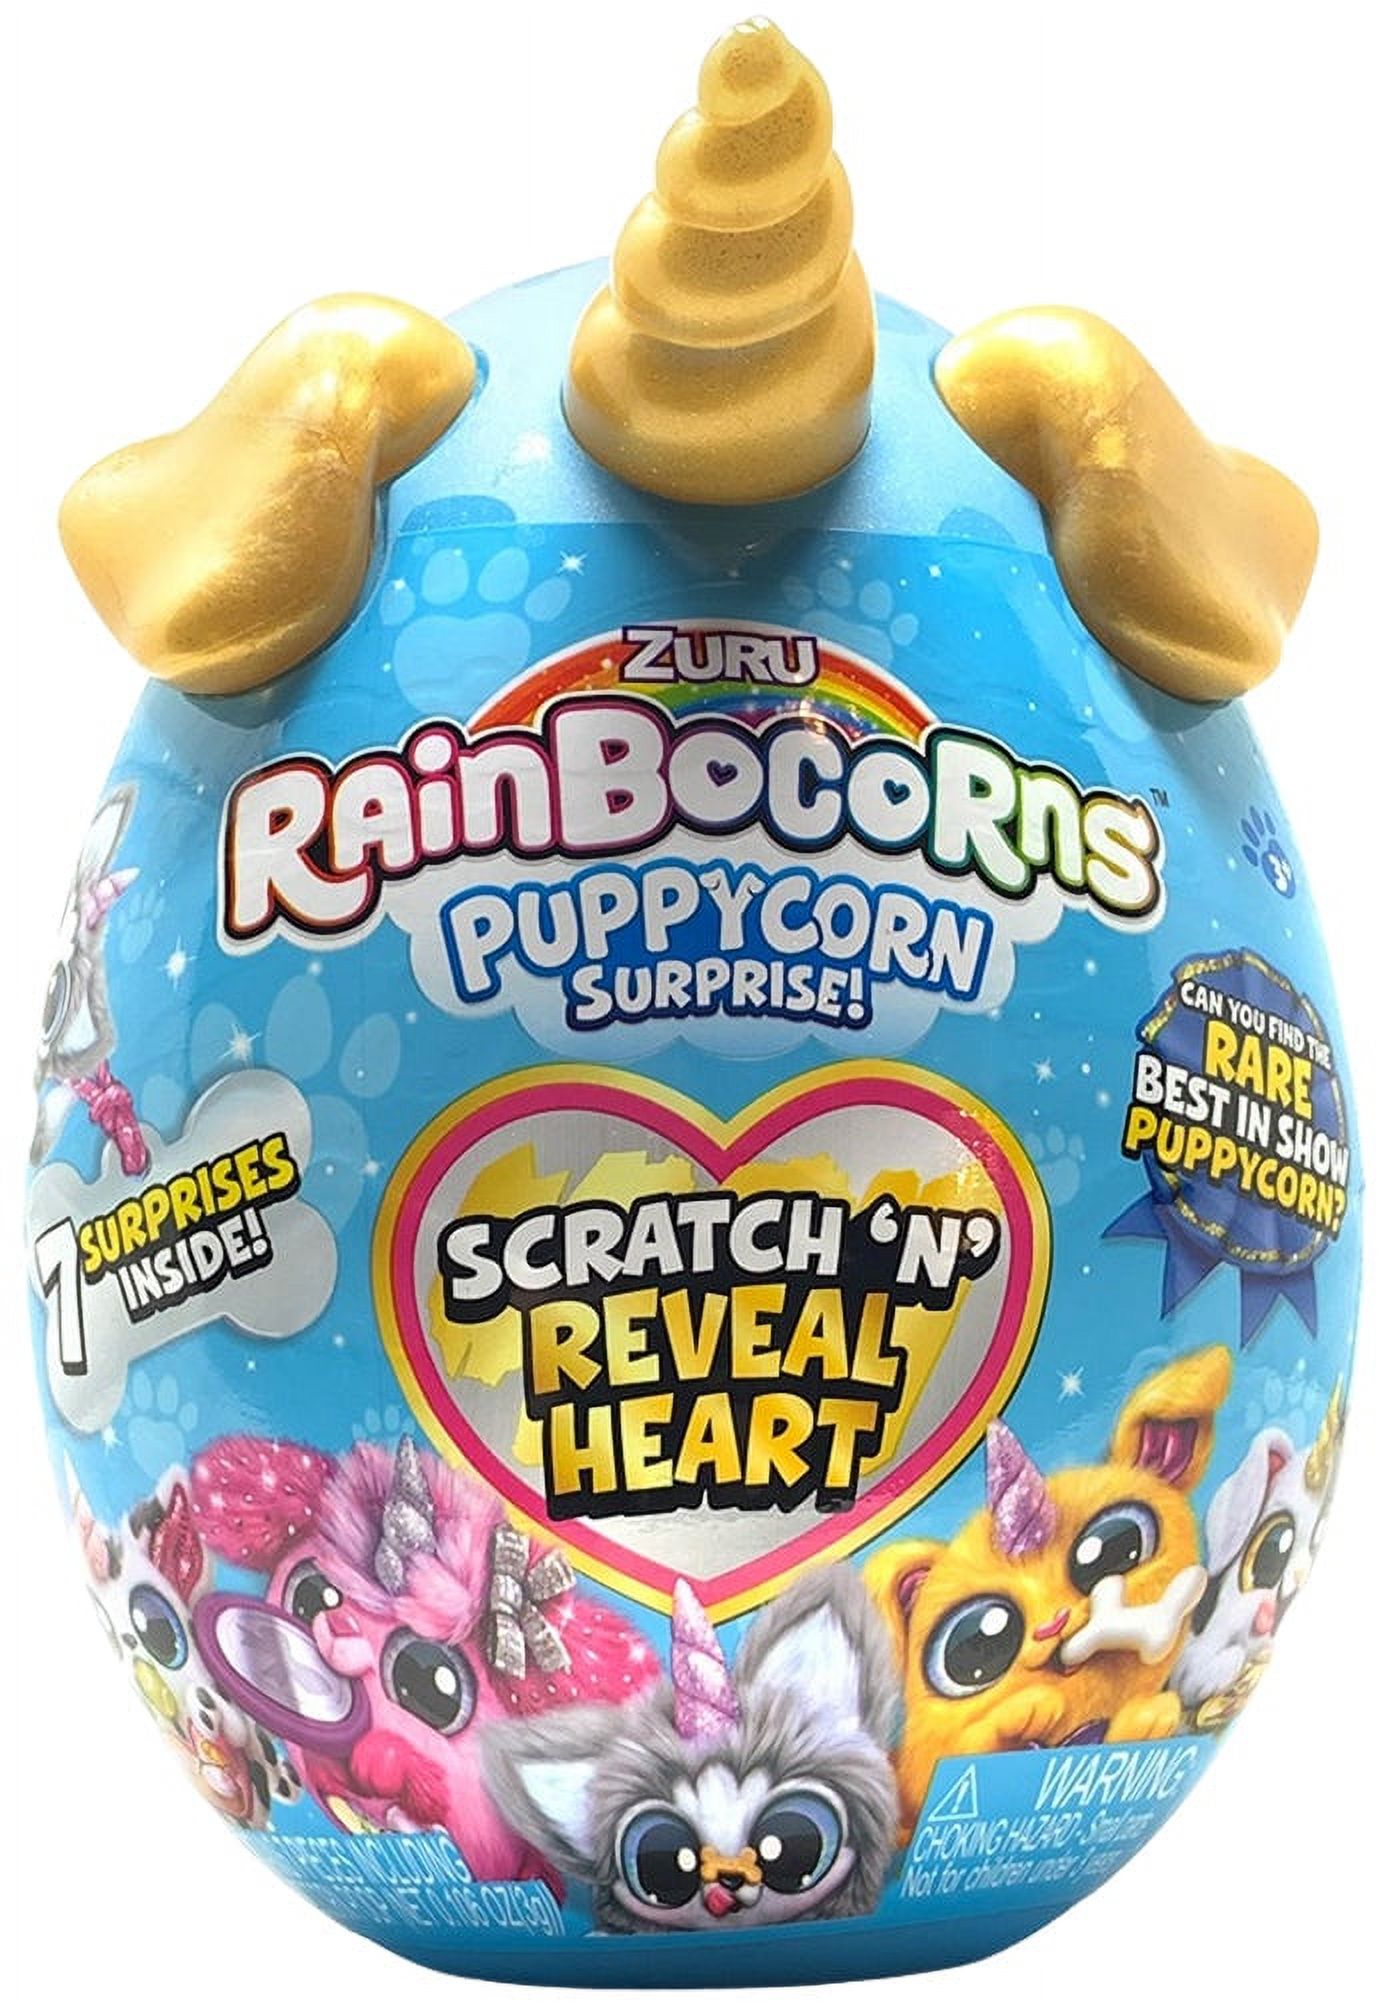 Rainbocorns Sparkle Heart Surprise Series 3 Puppycorns - random or select individual (mini rainbocorn) - image 4 of 4